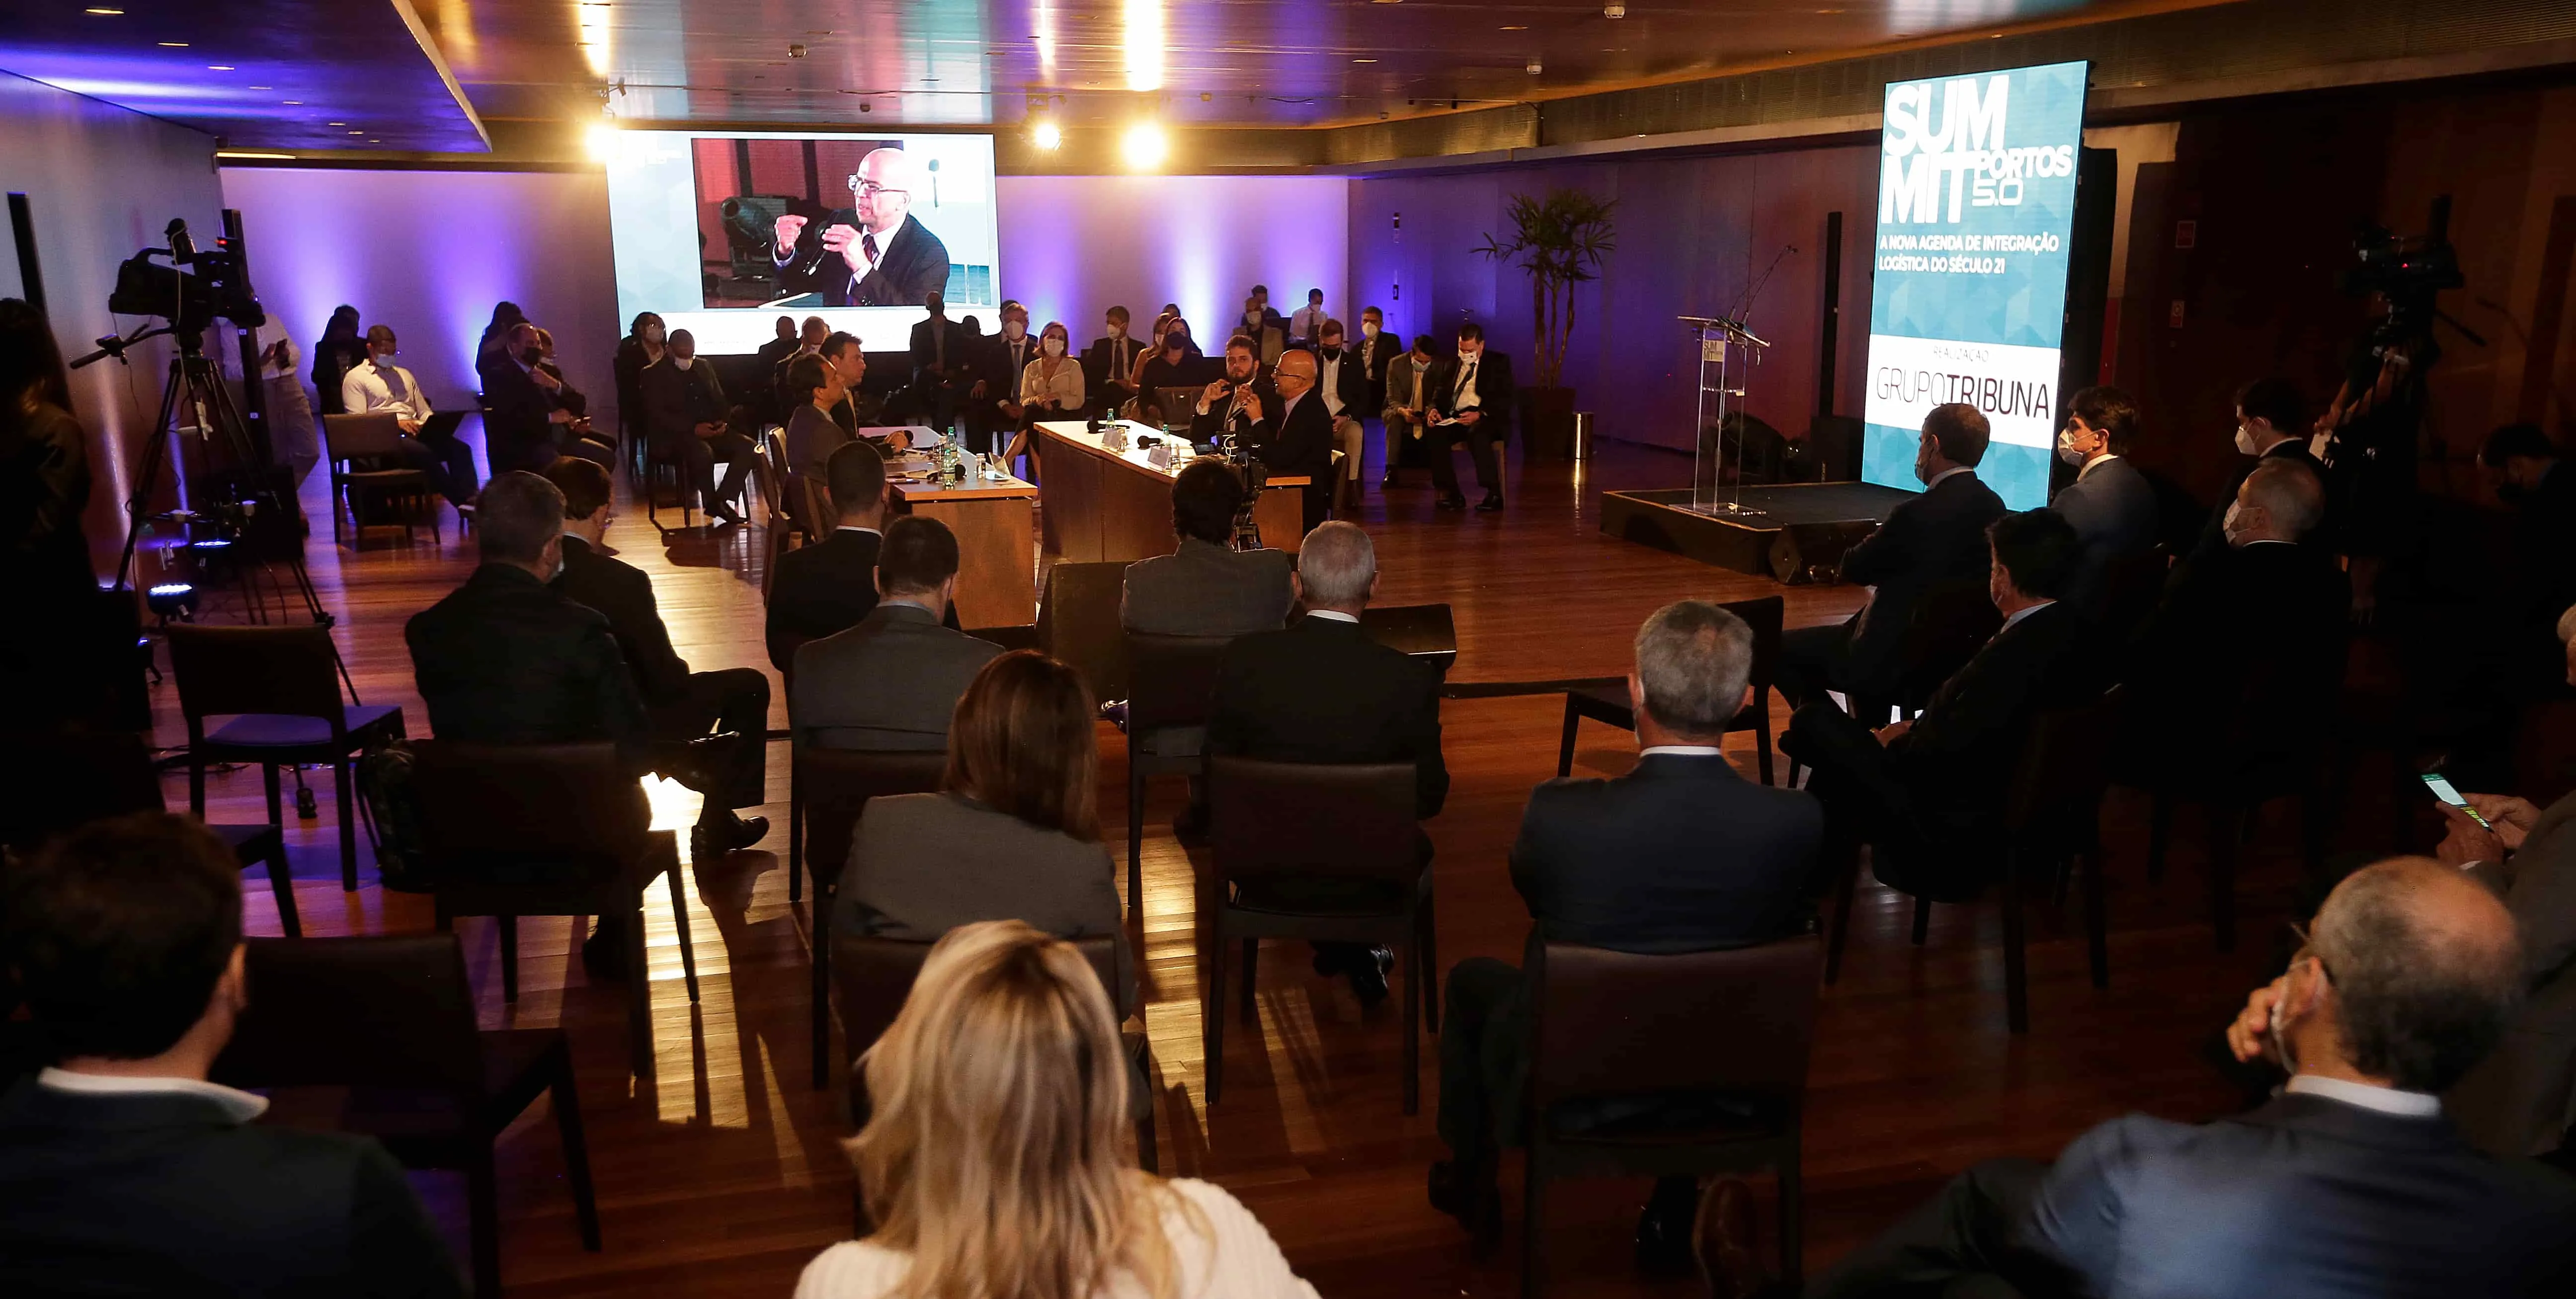  Summit Portos 5.0, evento do Grupo Tribuna, foi realizado nesta quinta-feira (21), em Brasília 